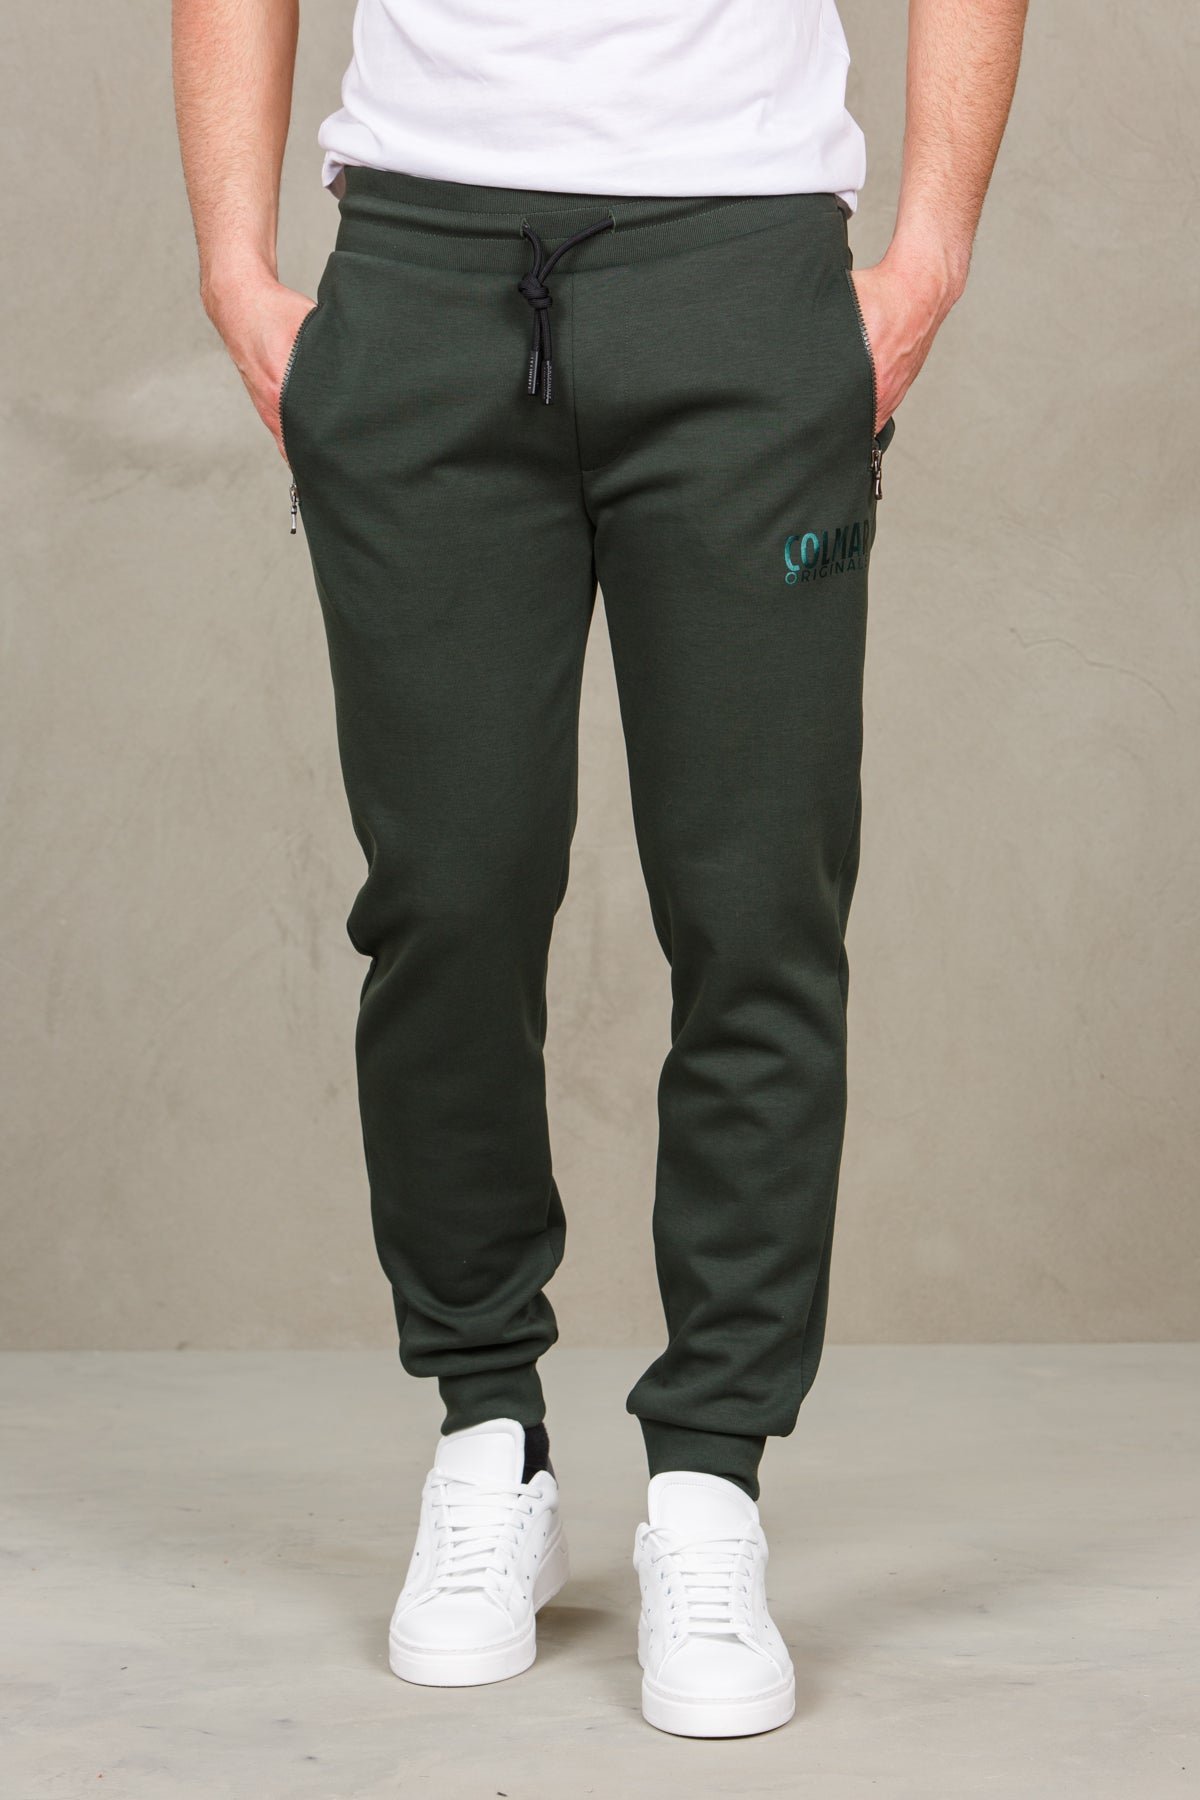 Pantaloni felpa uomo con logo colmar 82666382-military verde man  - 1